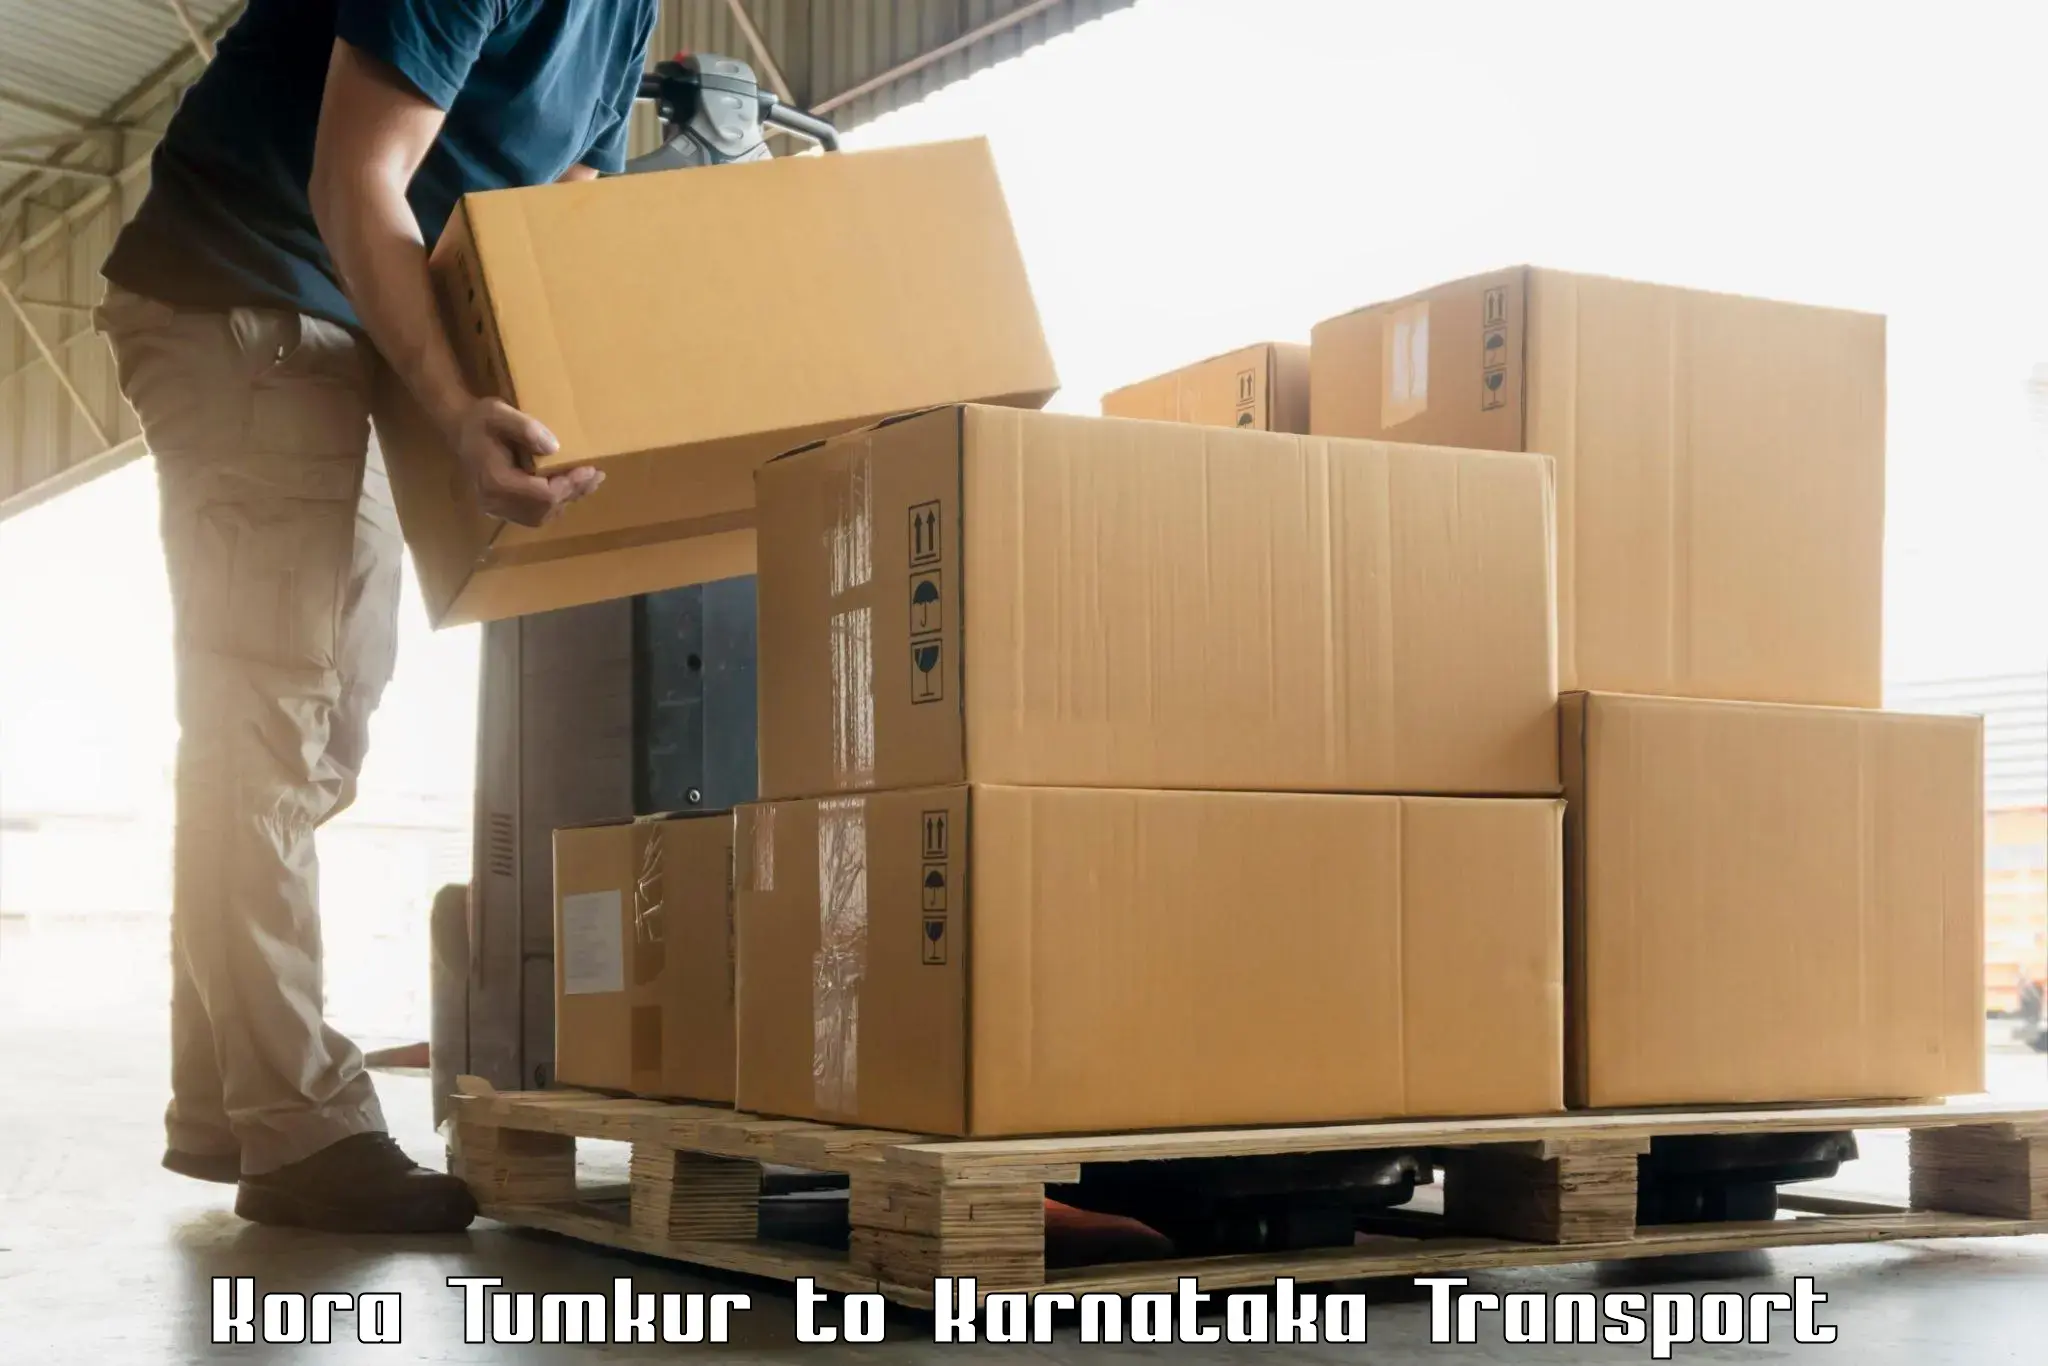 Online transport Kora Tumkur to Karnataka